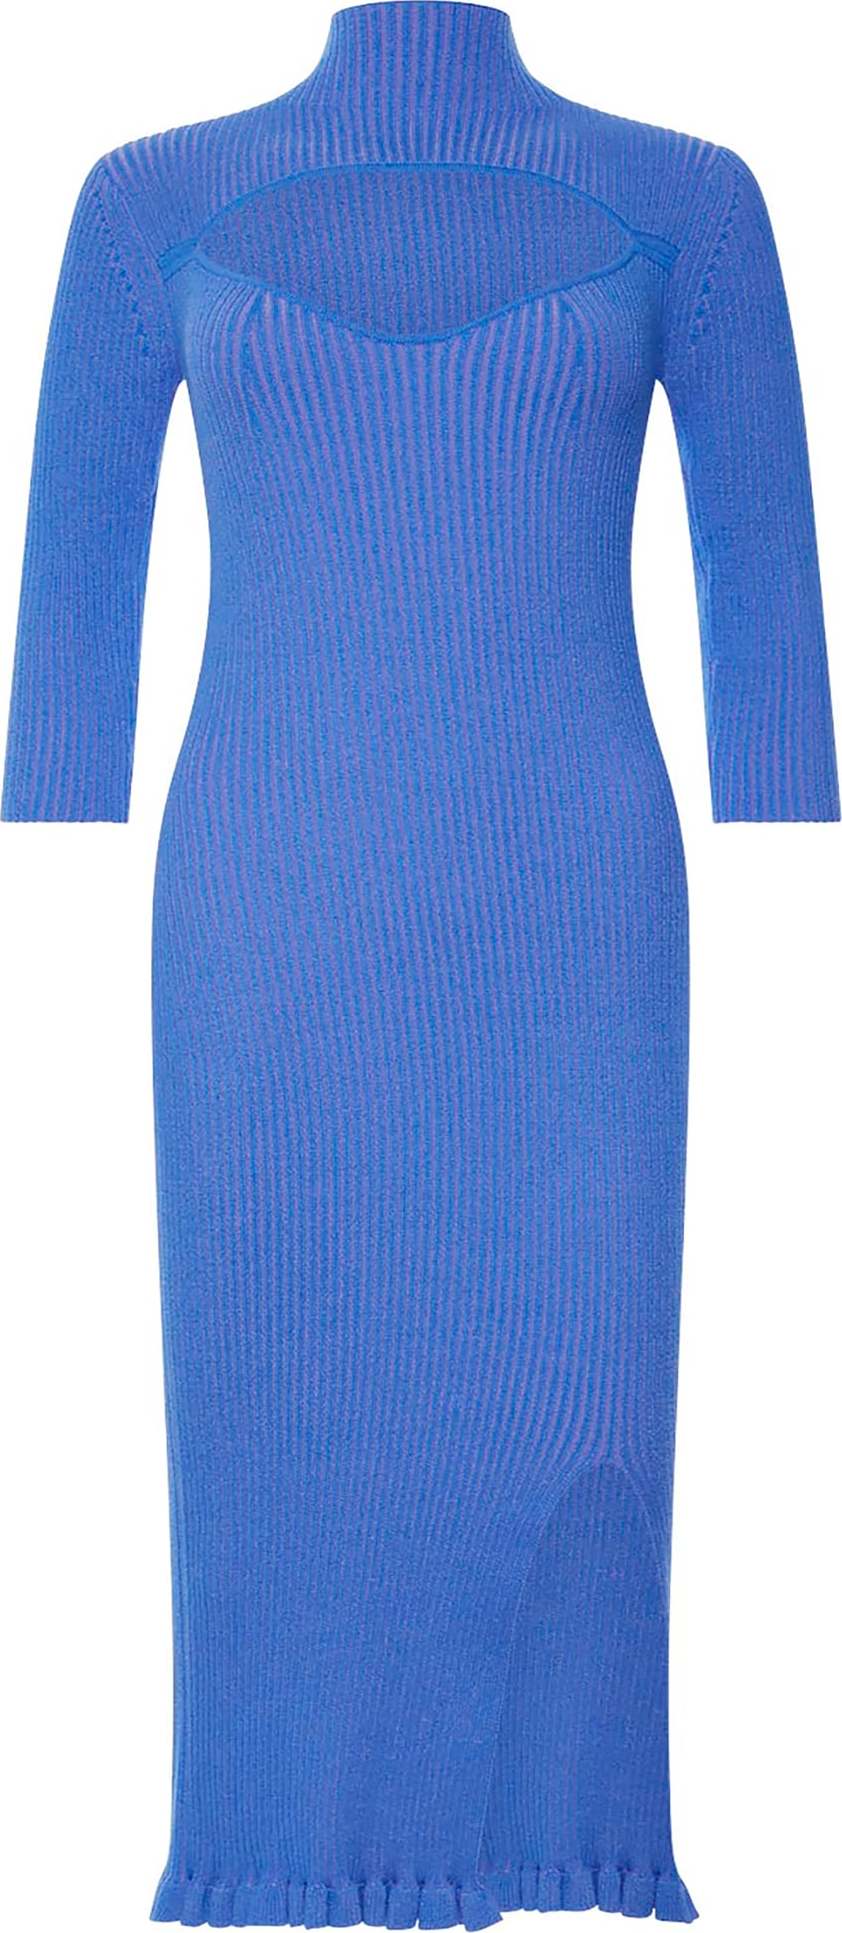 FRENCH CONNECTION Úpletové šaty 'Mathilda' modrá